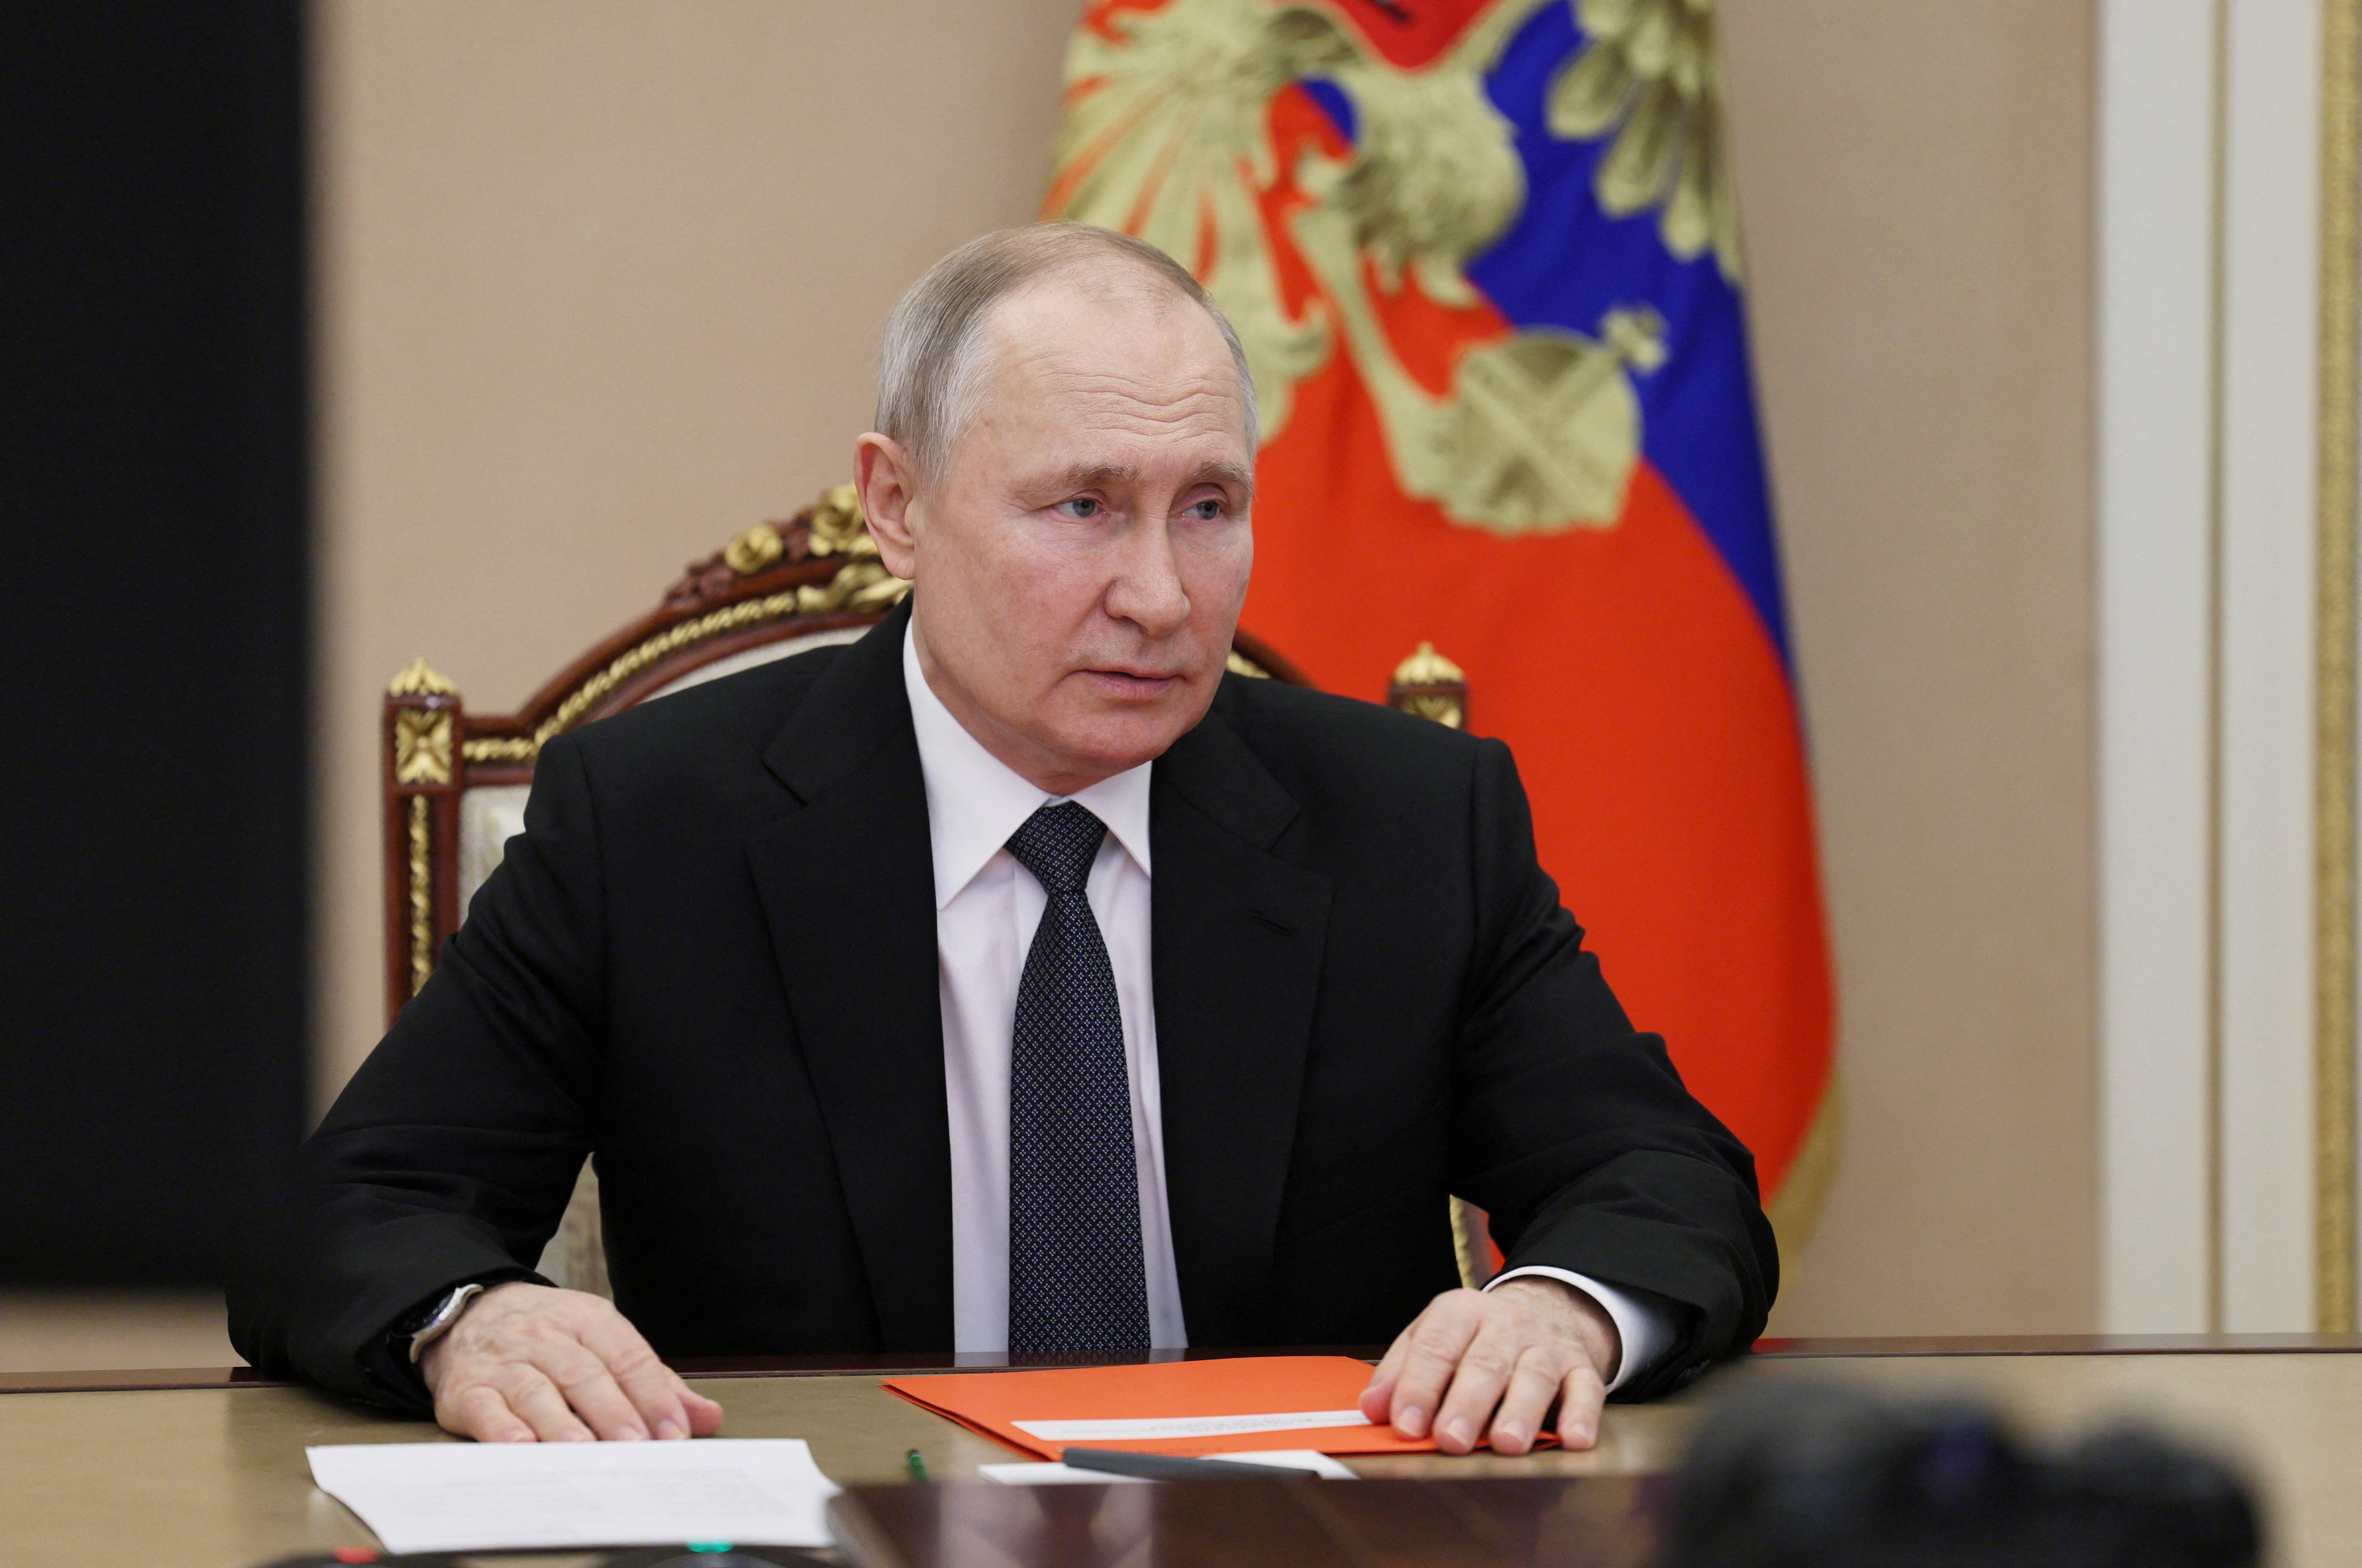 L'économie russe se contracte, selon la BERD, mais moins que prévu